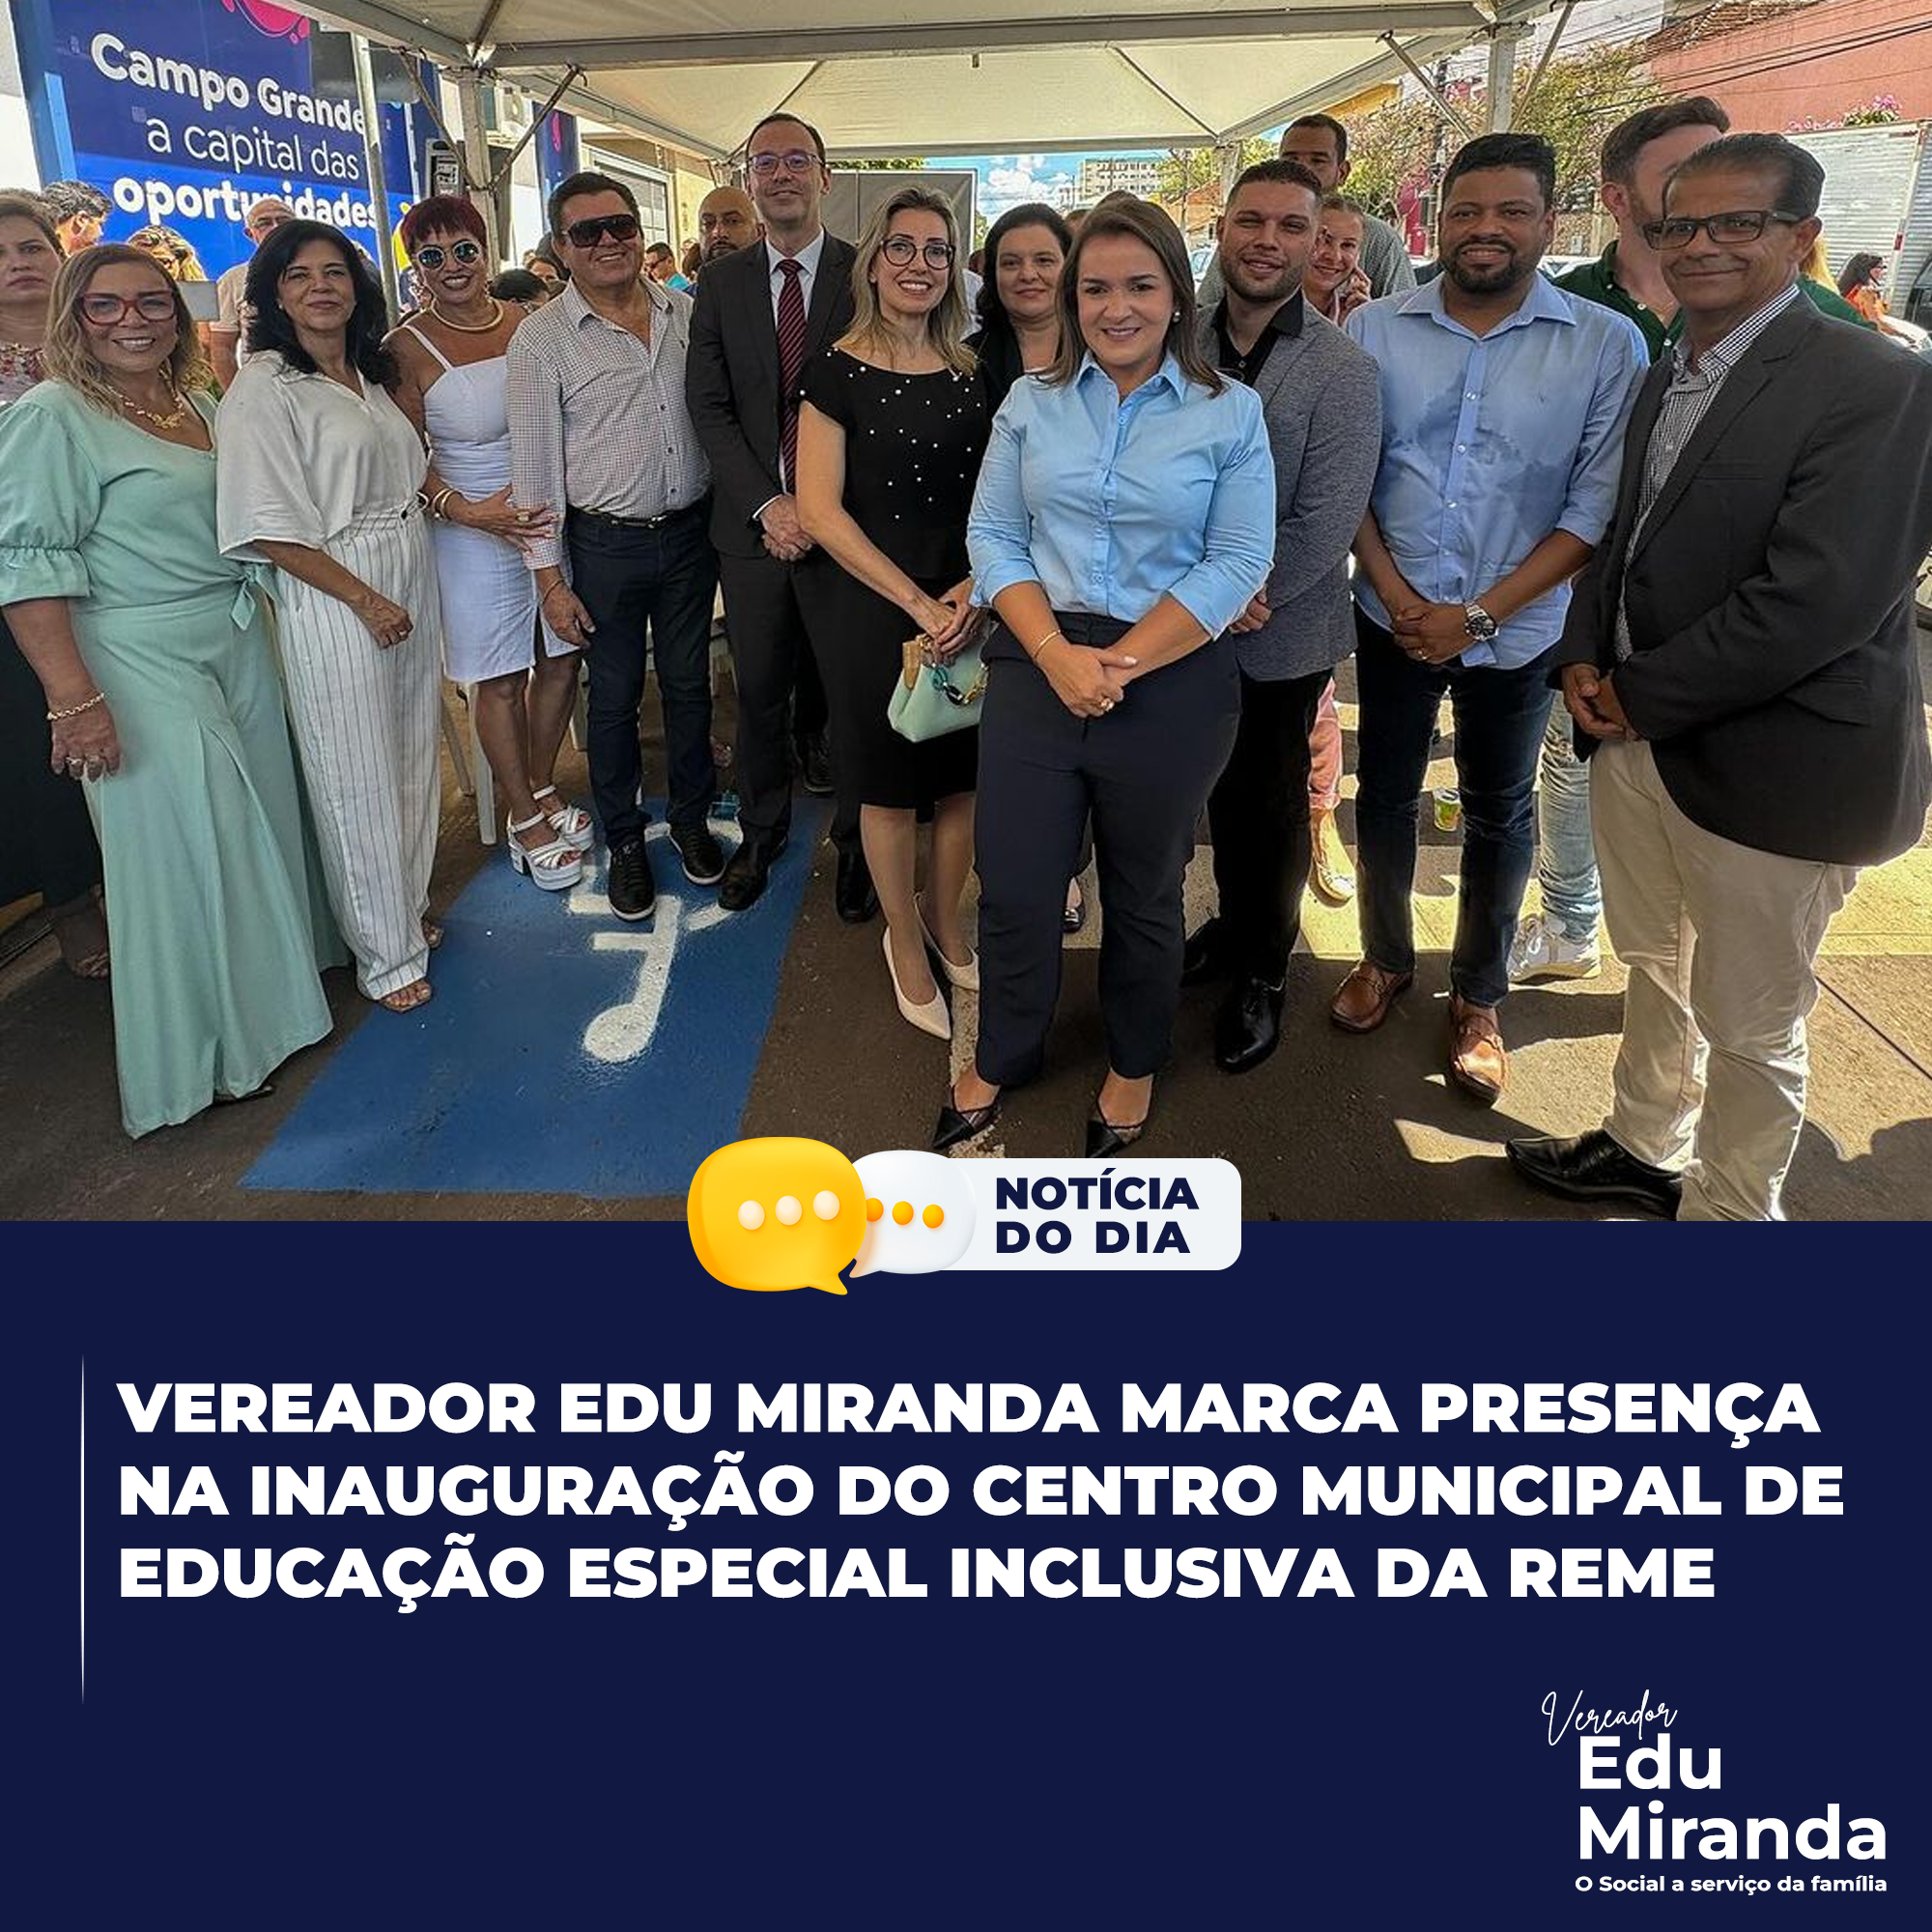 Vereador Edu Miranda marca presença na inauguração do Centro Municipal de Educação Especial Inclusiva da Reme